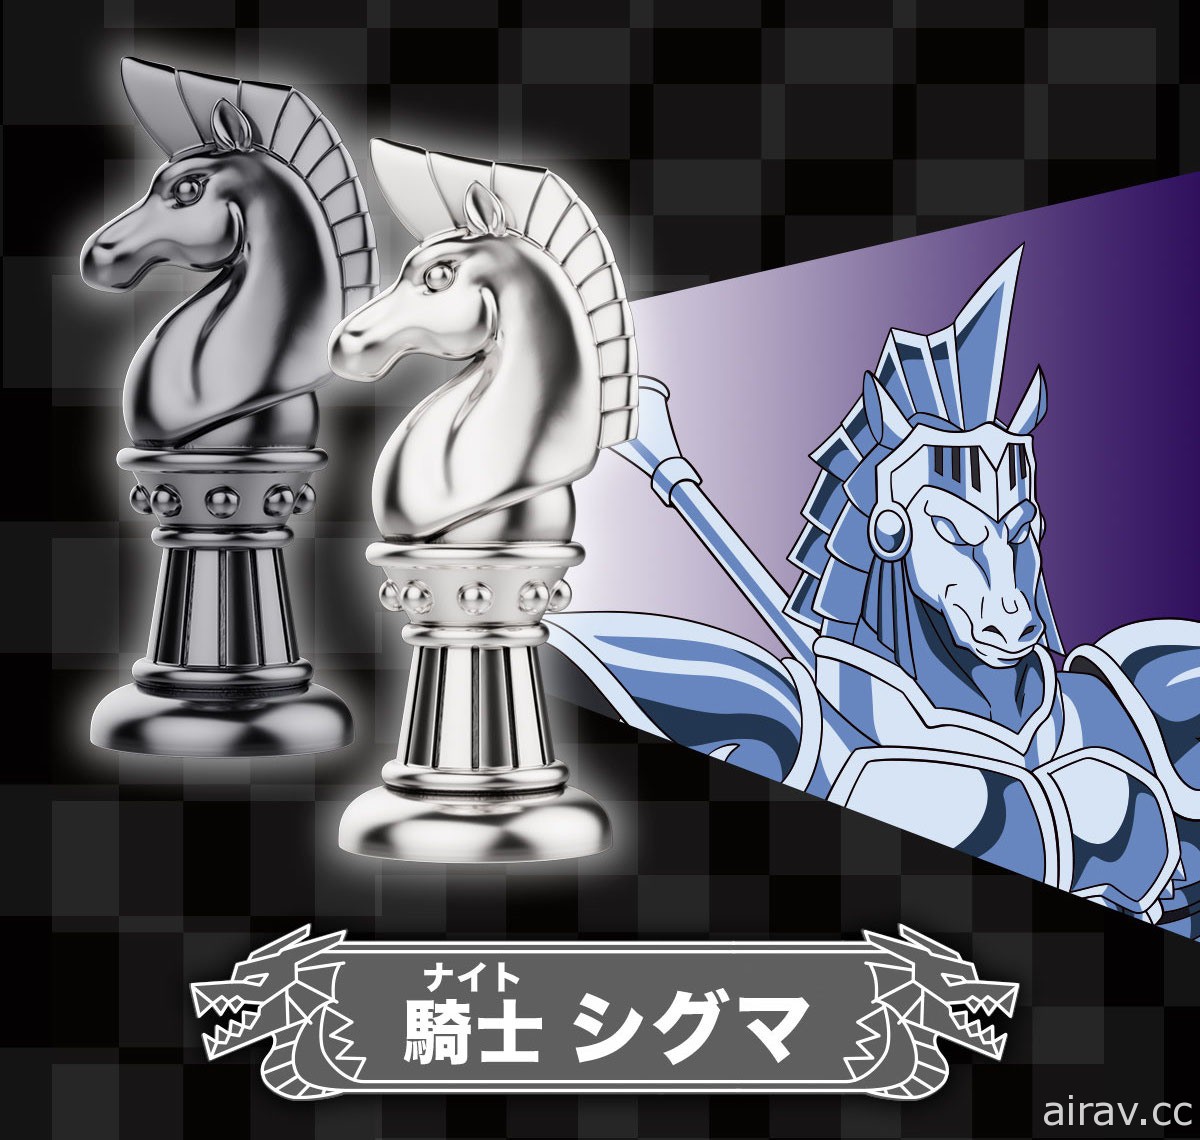 《勇者斗恶龙 达伊的大冒险》推出哈德拉亲卫骑团银制西洋棋组 要价 300 万日圆